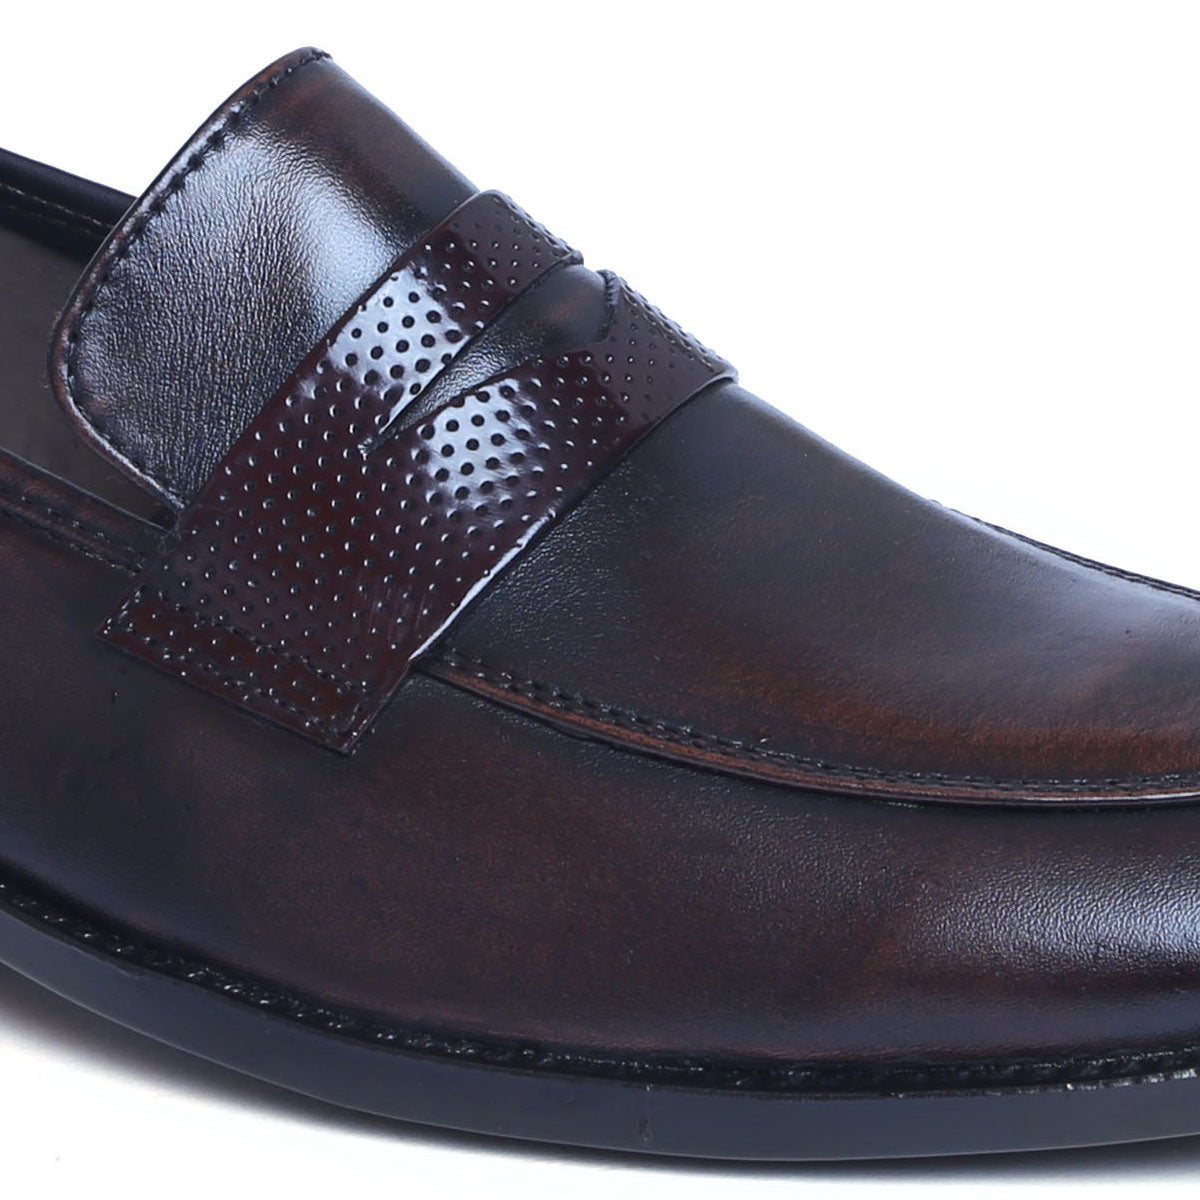 Genuine Leather Slip-On for Men S-2915